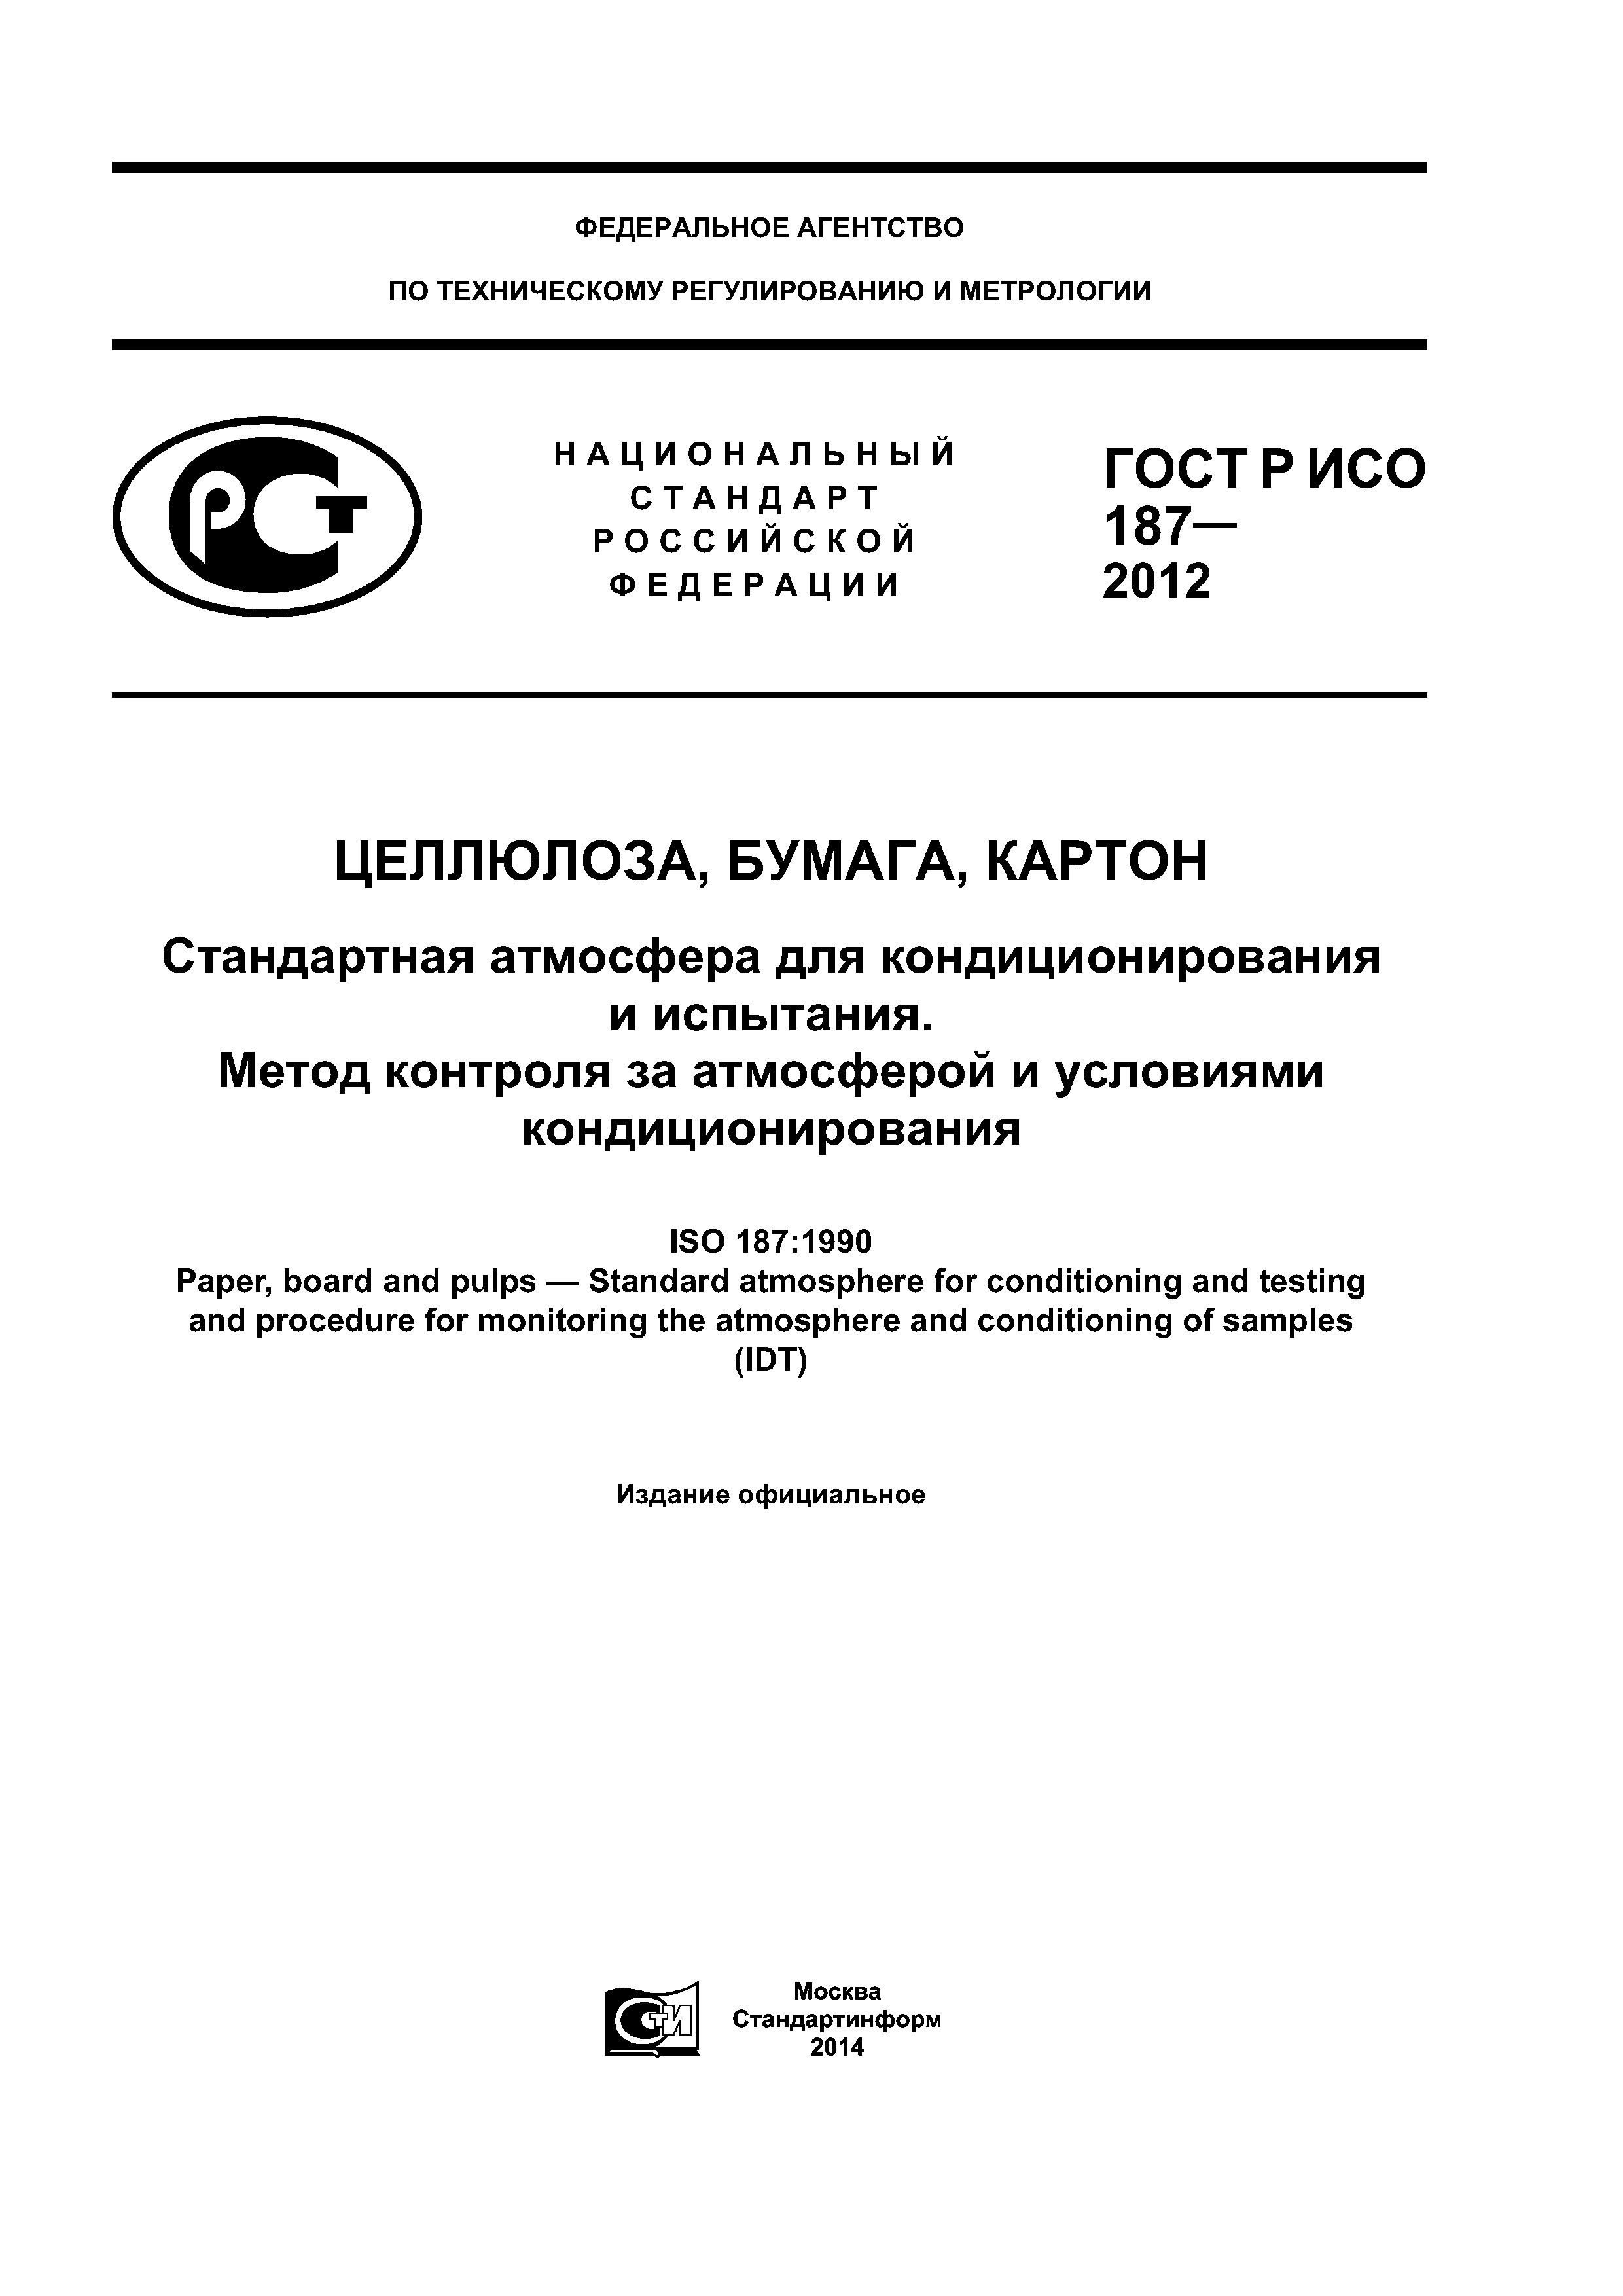 ГОСТ Р ИСО 187-2012